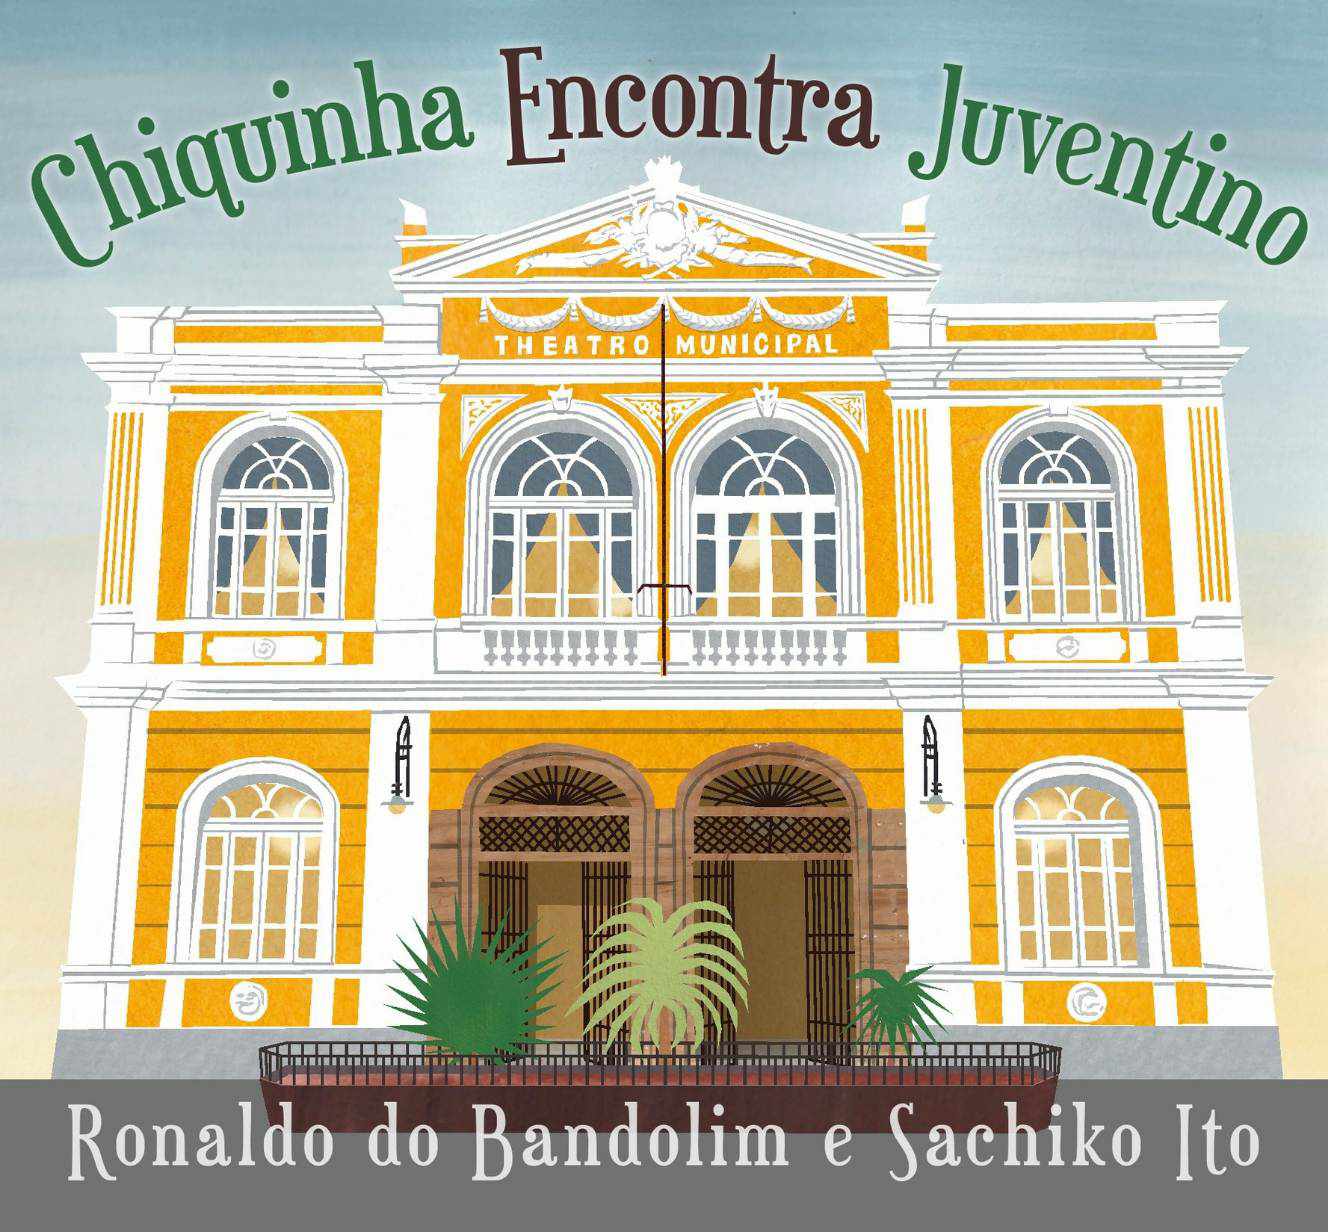 CDアルバム『Chiquinha encontra Juventino 』 のイントロ紹介